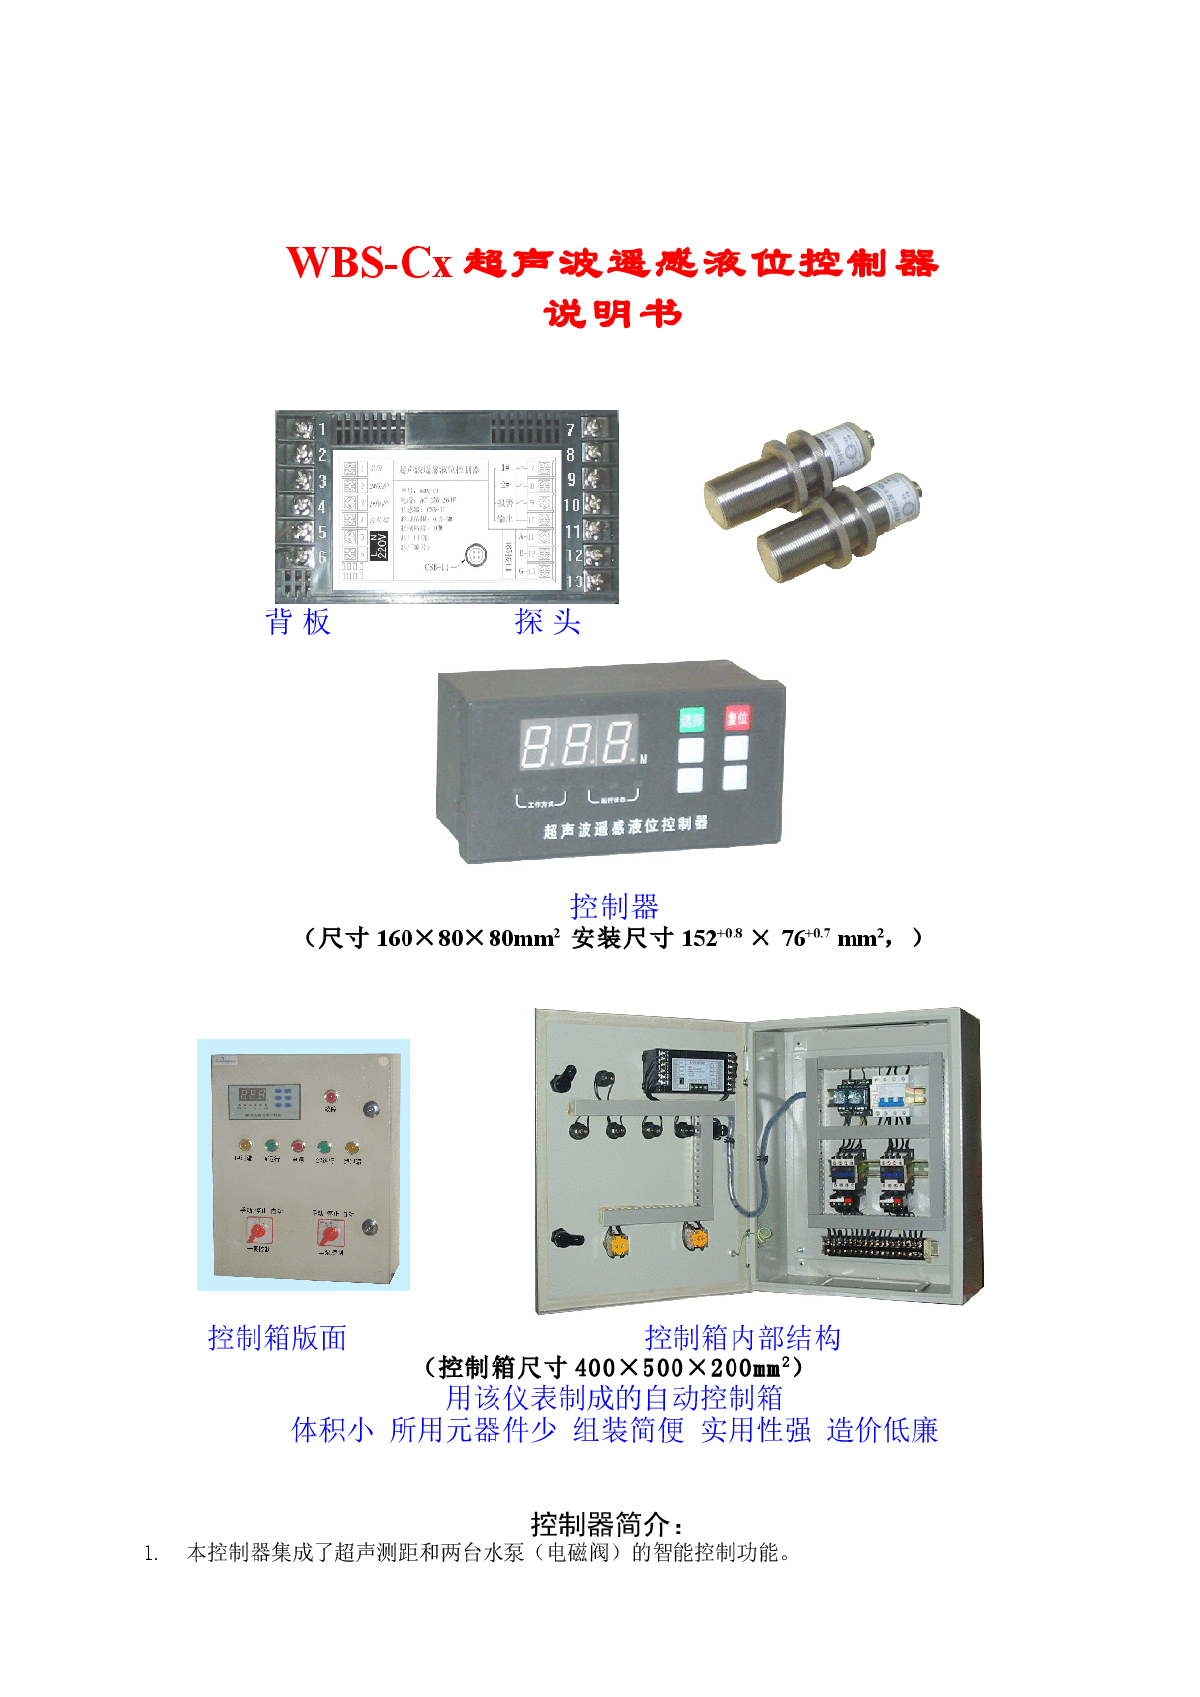 超声波液位控制器功能及应用